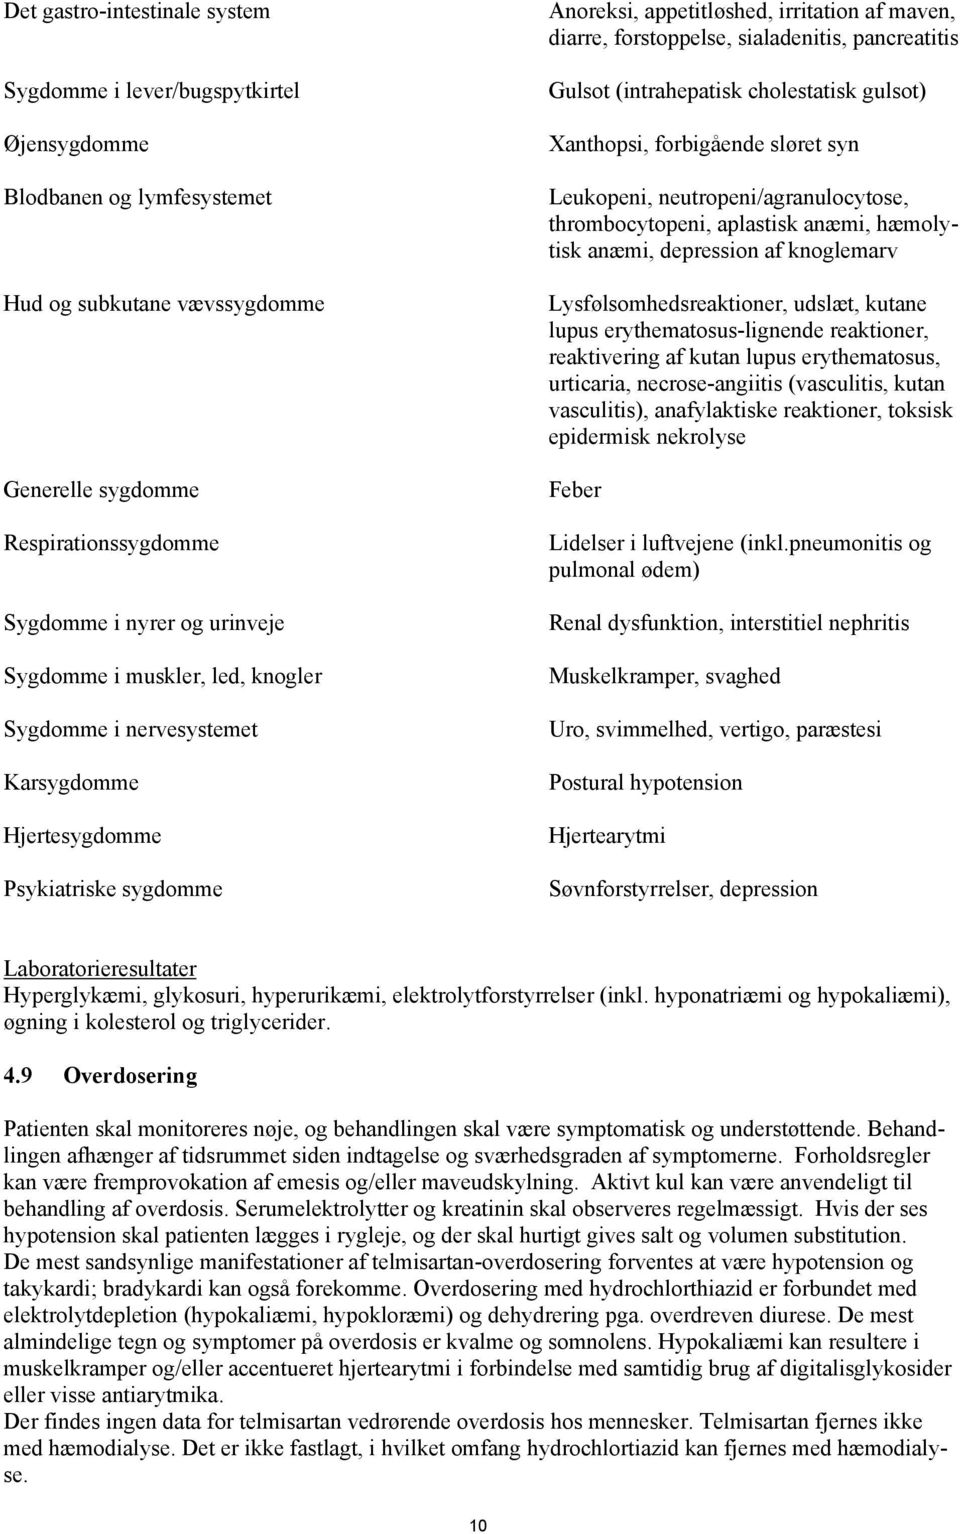 pancreatitis Gulsot (intrahepatisk cholestatisk gulsot) Xanthopsi, forbigående sløret syn Leukopeni, neutropeni/agranulocytose, thrombocytopeni, aplastisk anæmi, hæmolytisk anæmi, depression af